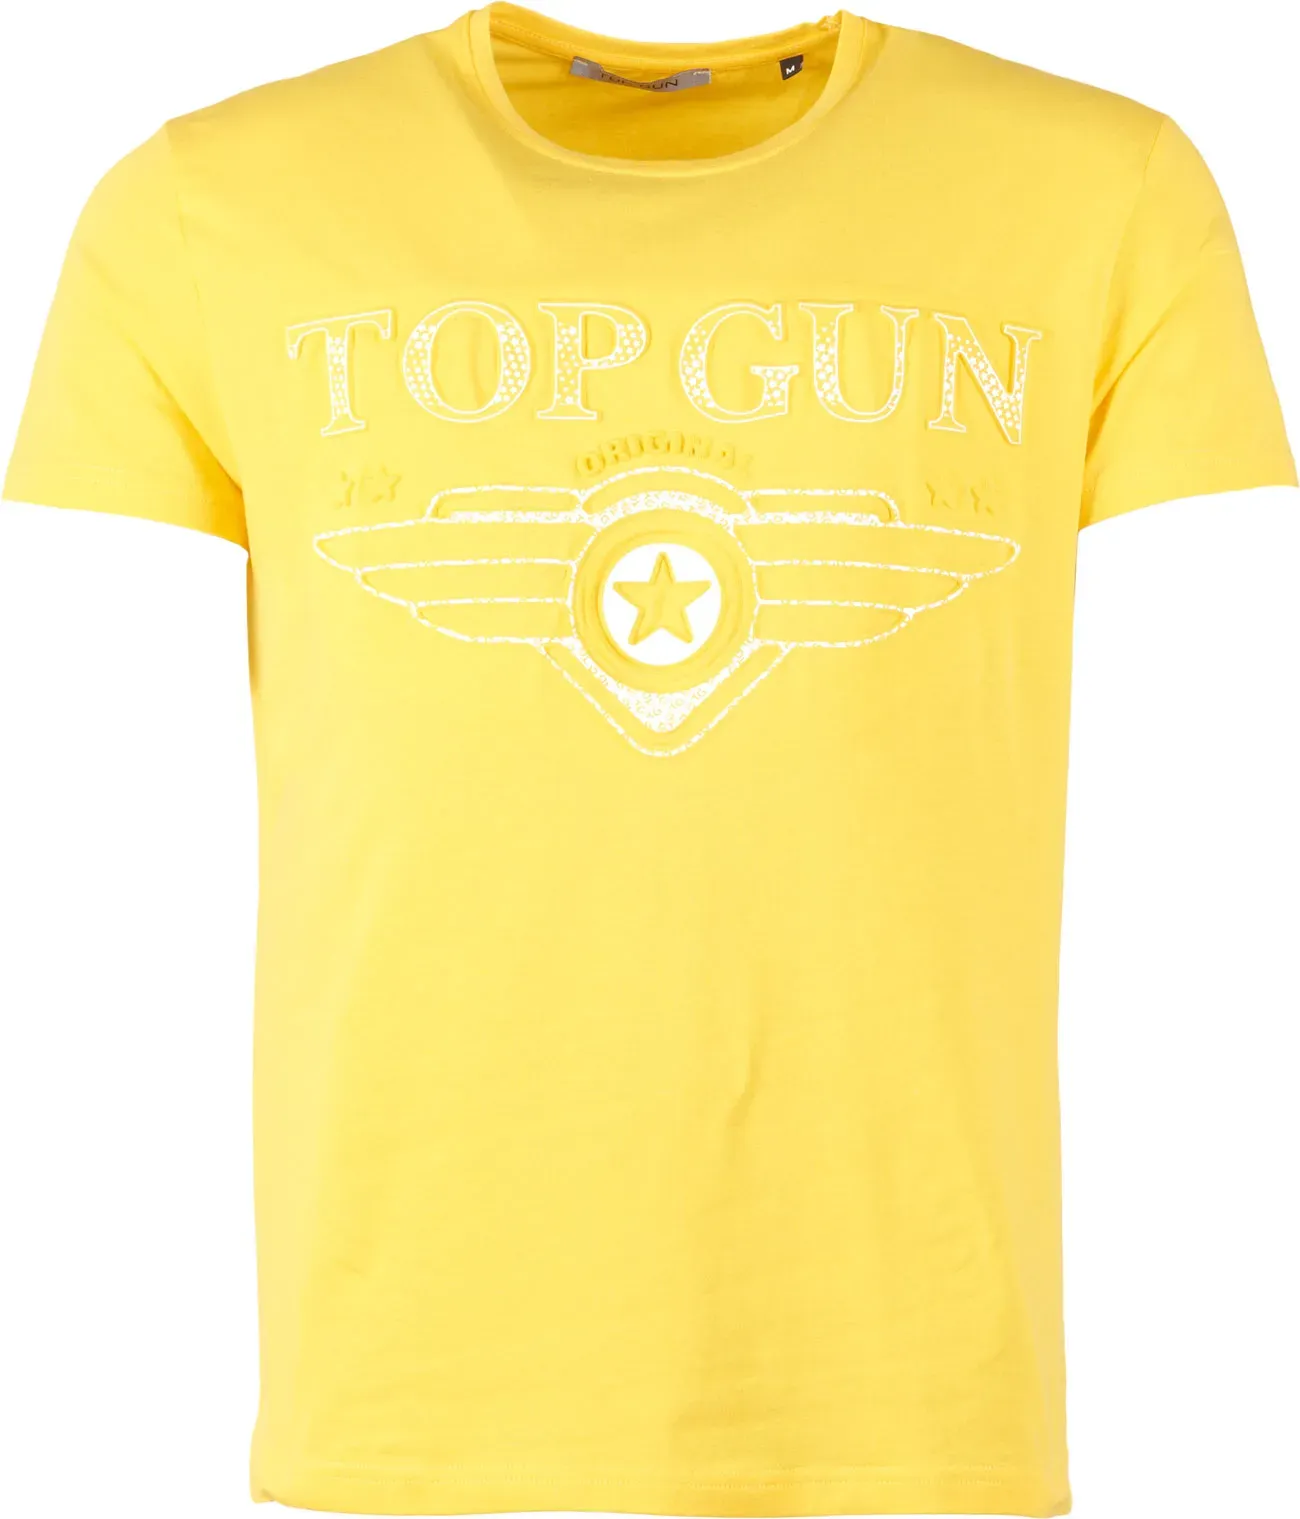 Top Gun Bling, t-shirt - Jaune - XL